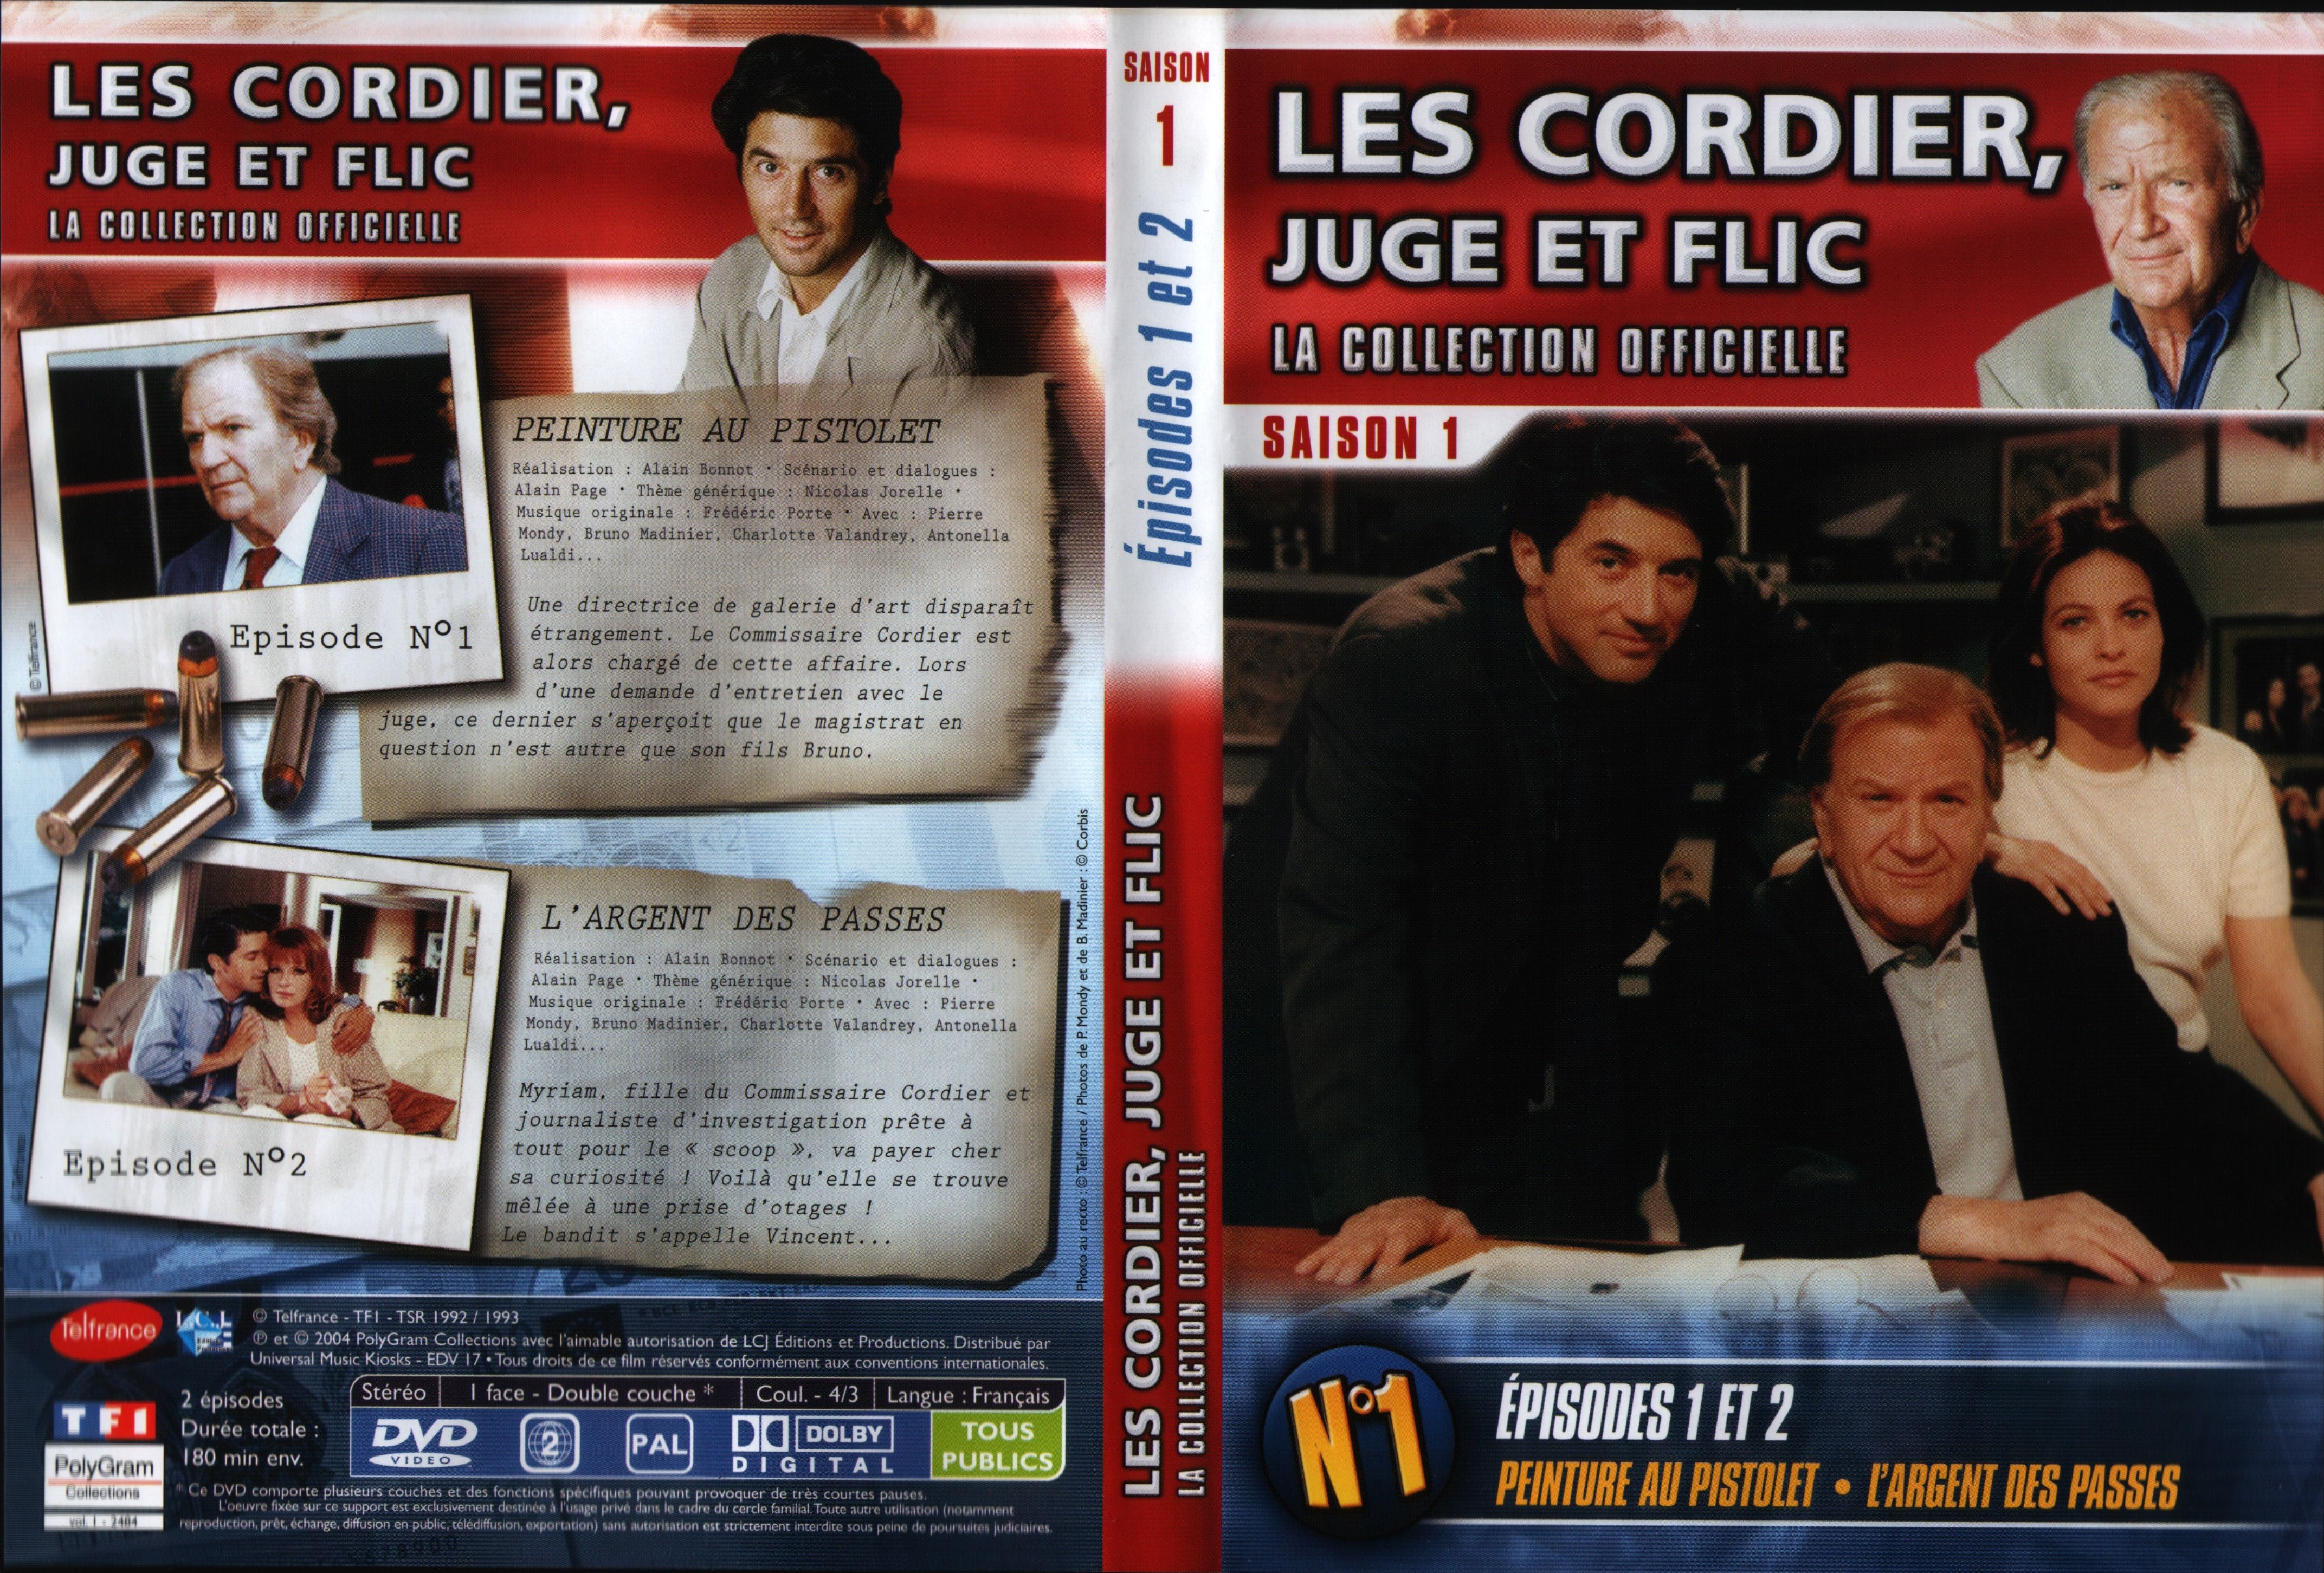 Jaquette DVD Les cordier juge et flic Saison 1 vol 1